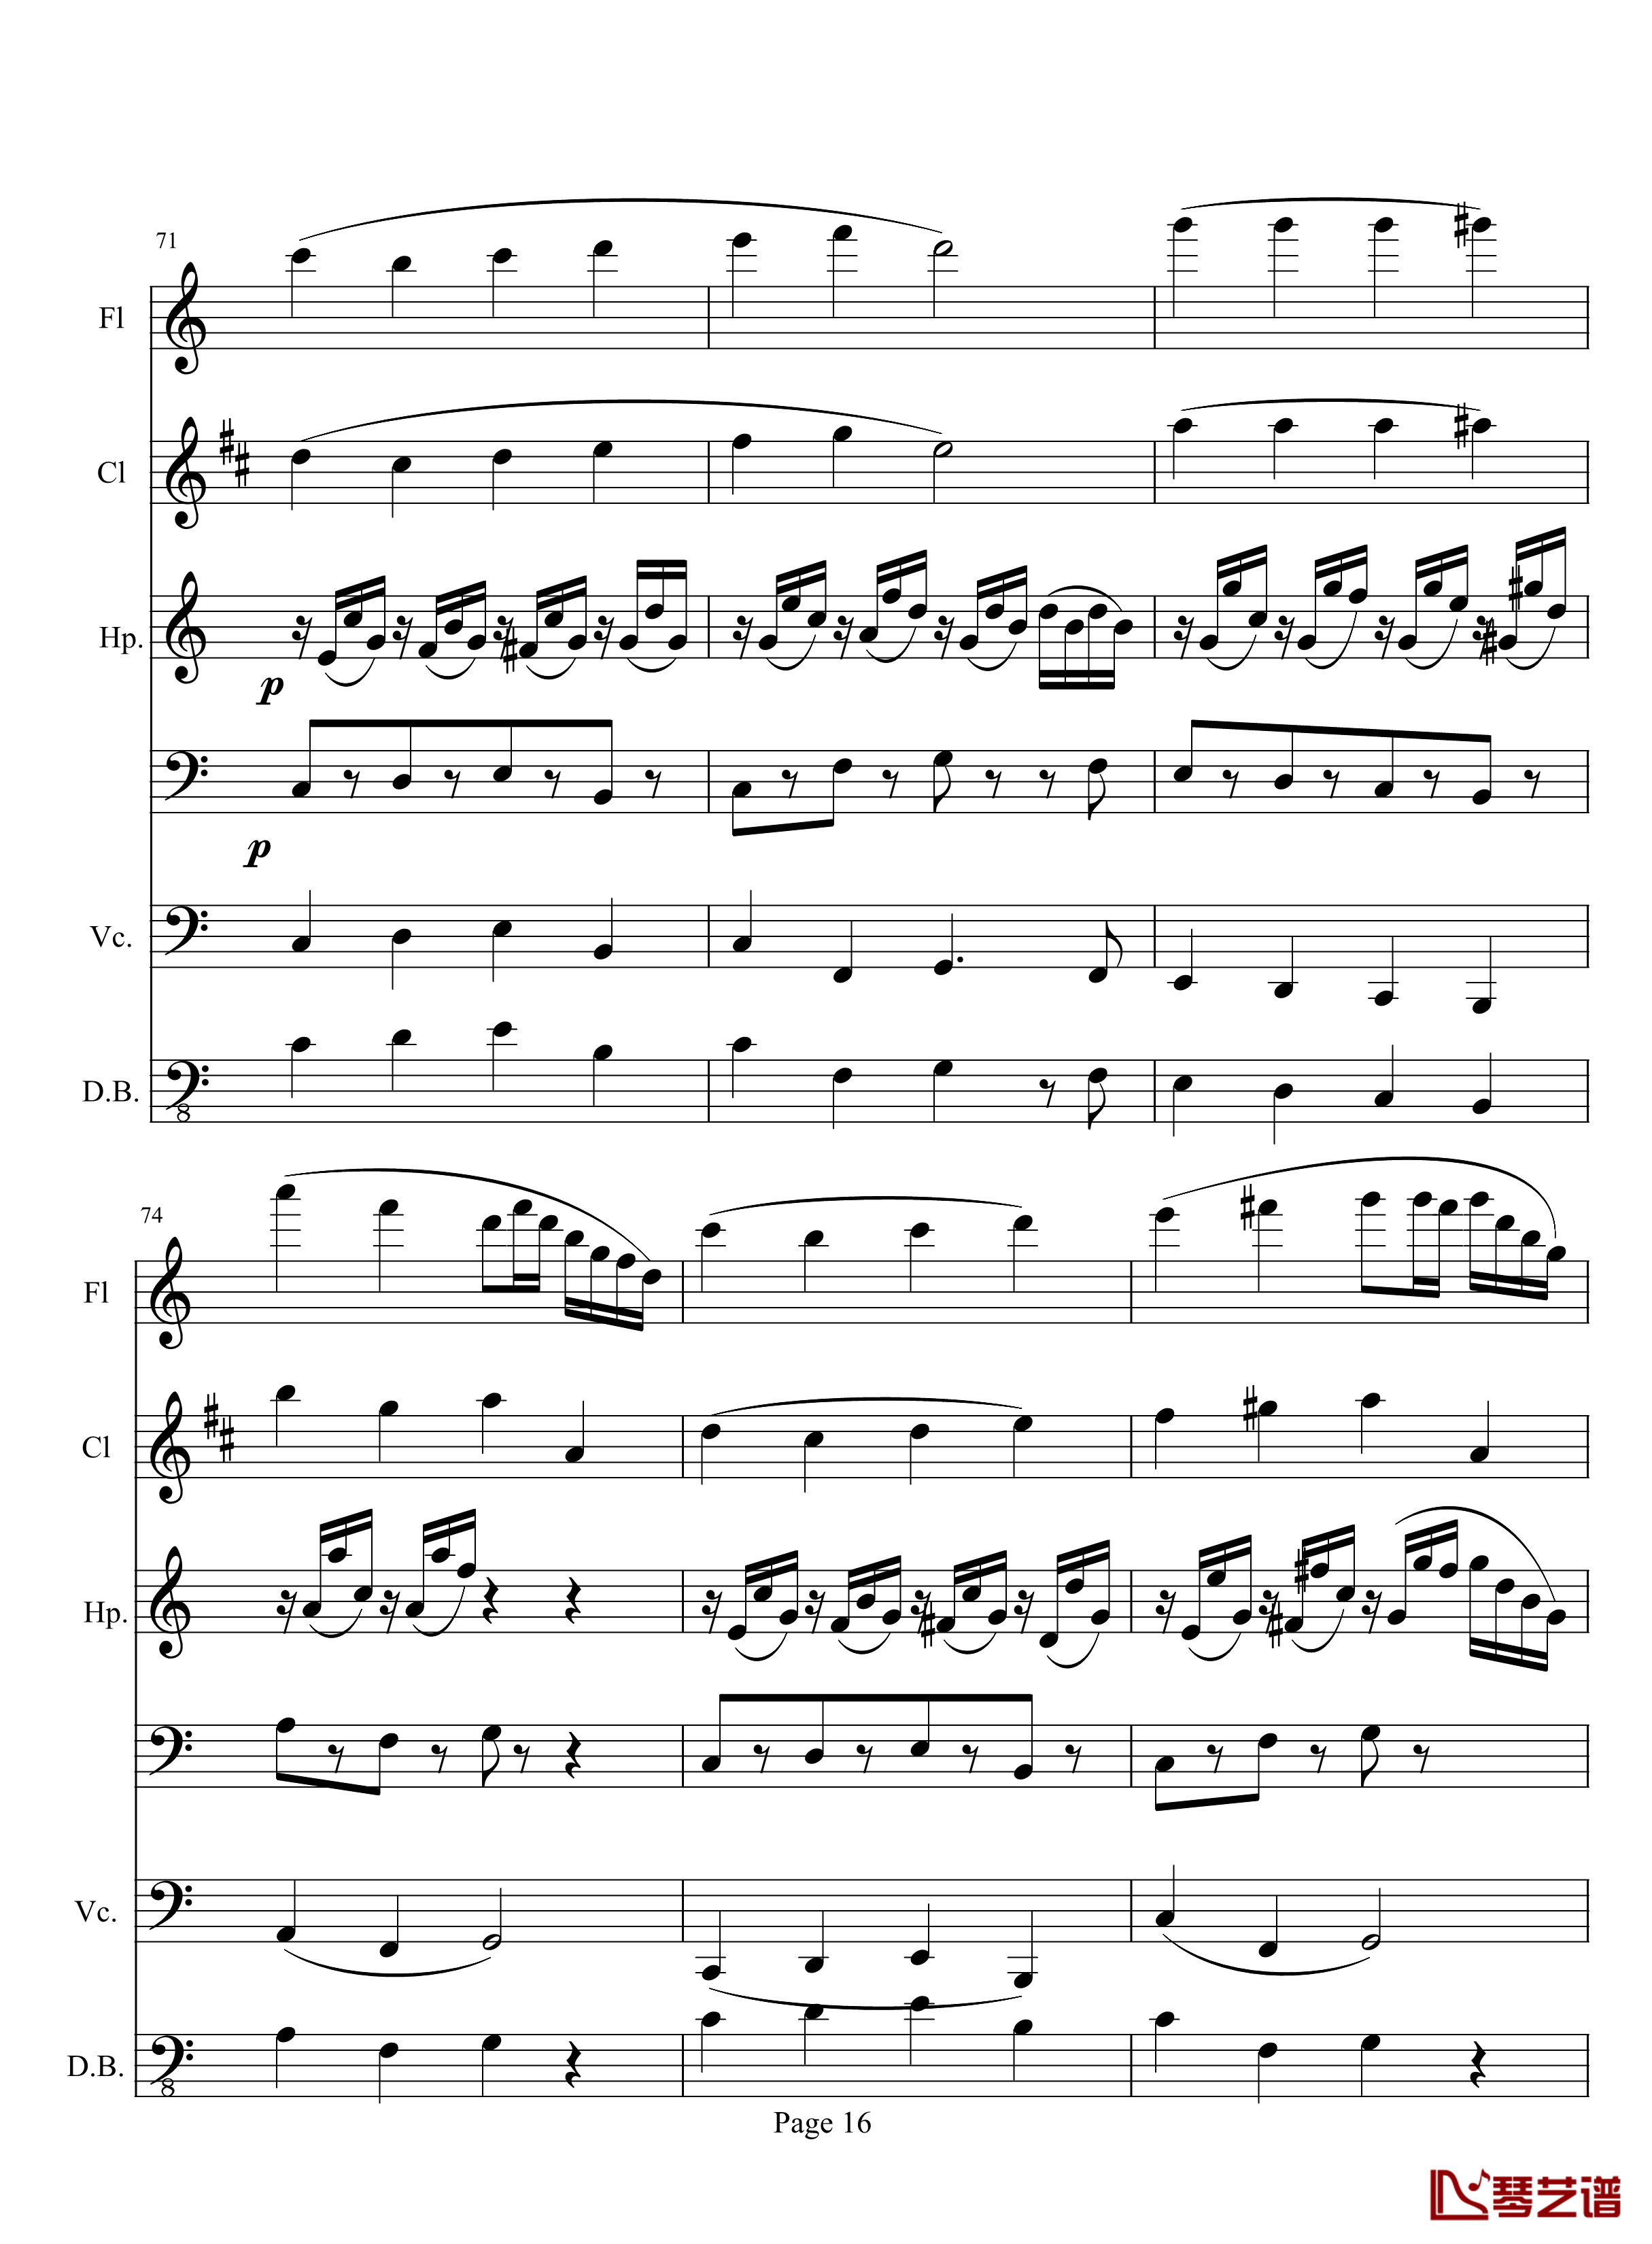 奏鸣曲之交响钢琴谱-第10首-2-贝多芬-beethoven16